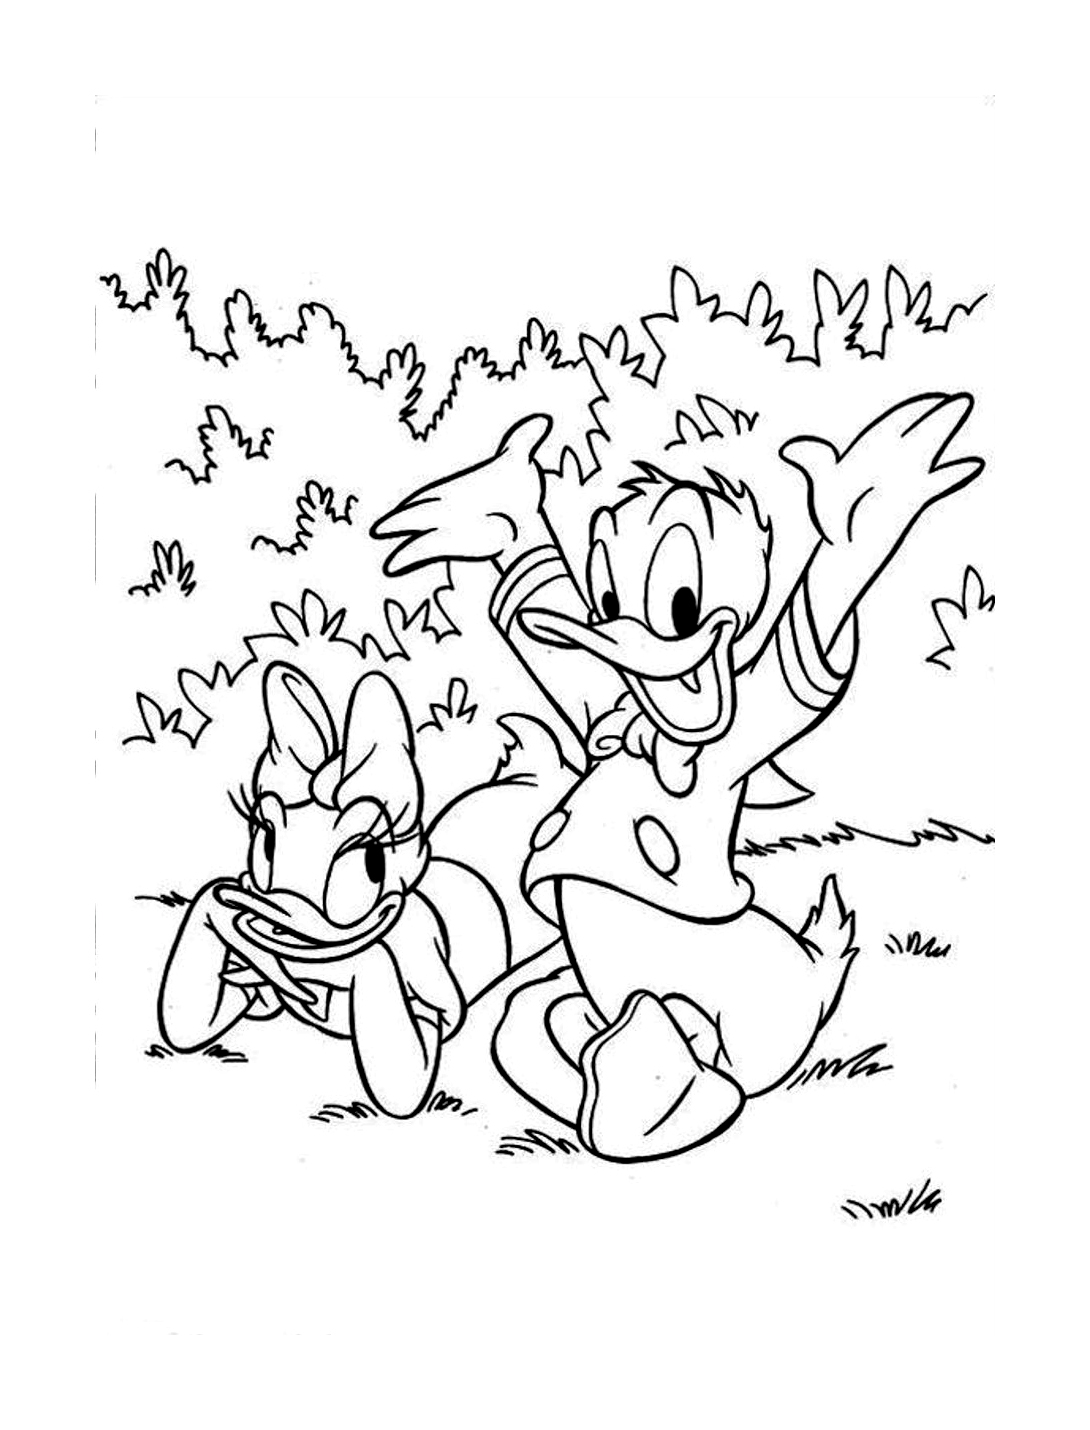 Donald et son amie Daisy en picnic